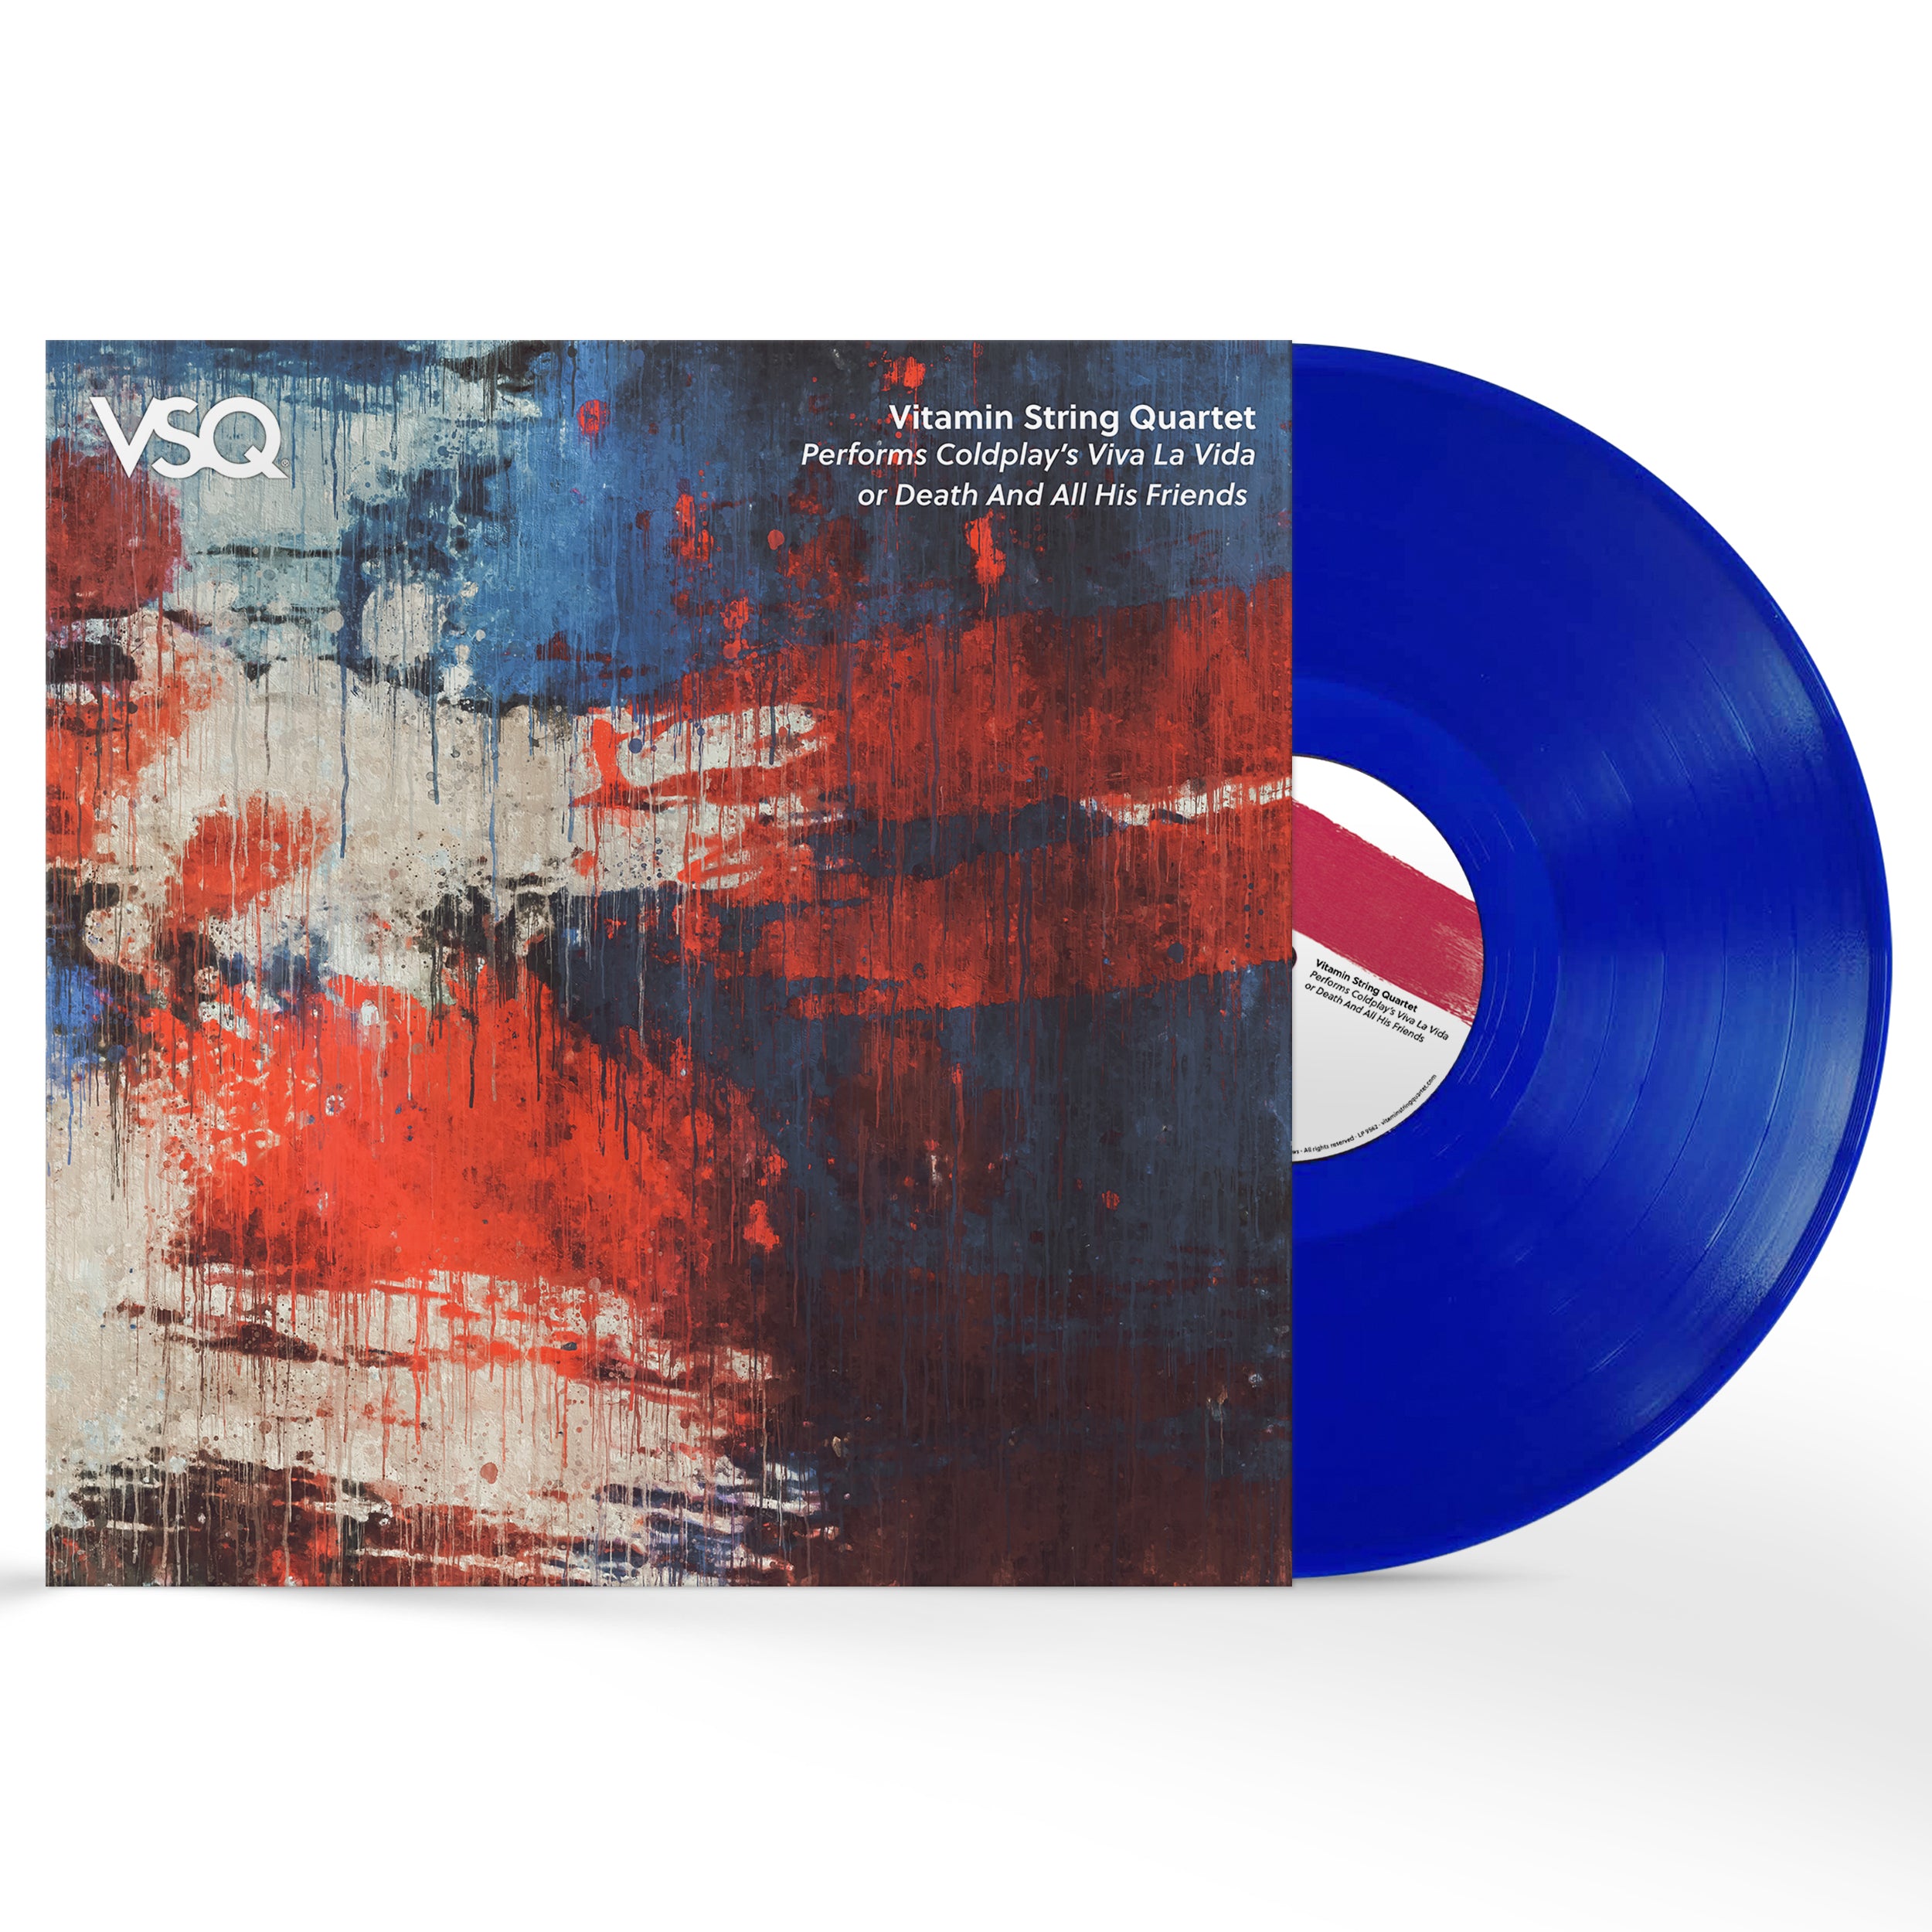 blue vinyl lp for coldplay's viva la vida cover by Vitamin String Quartet